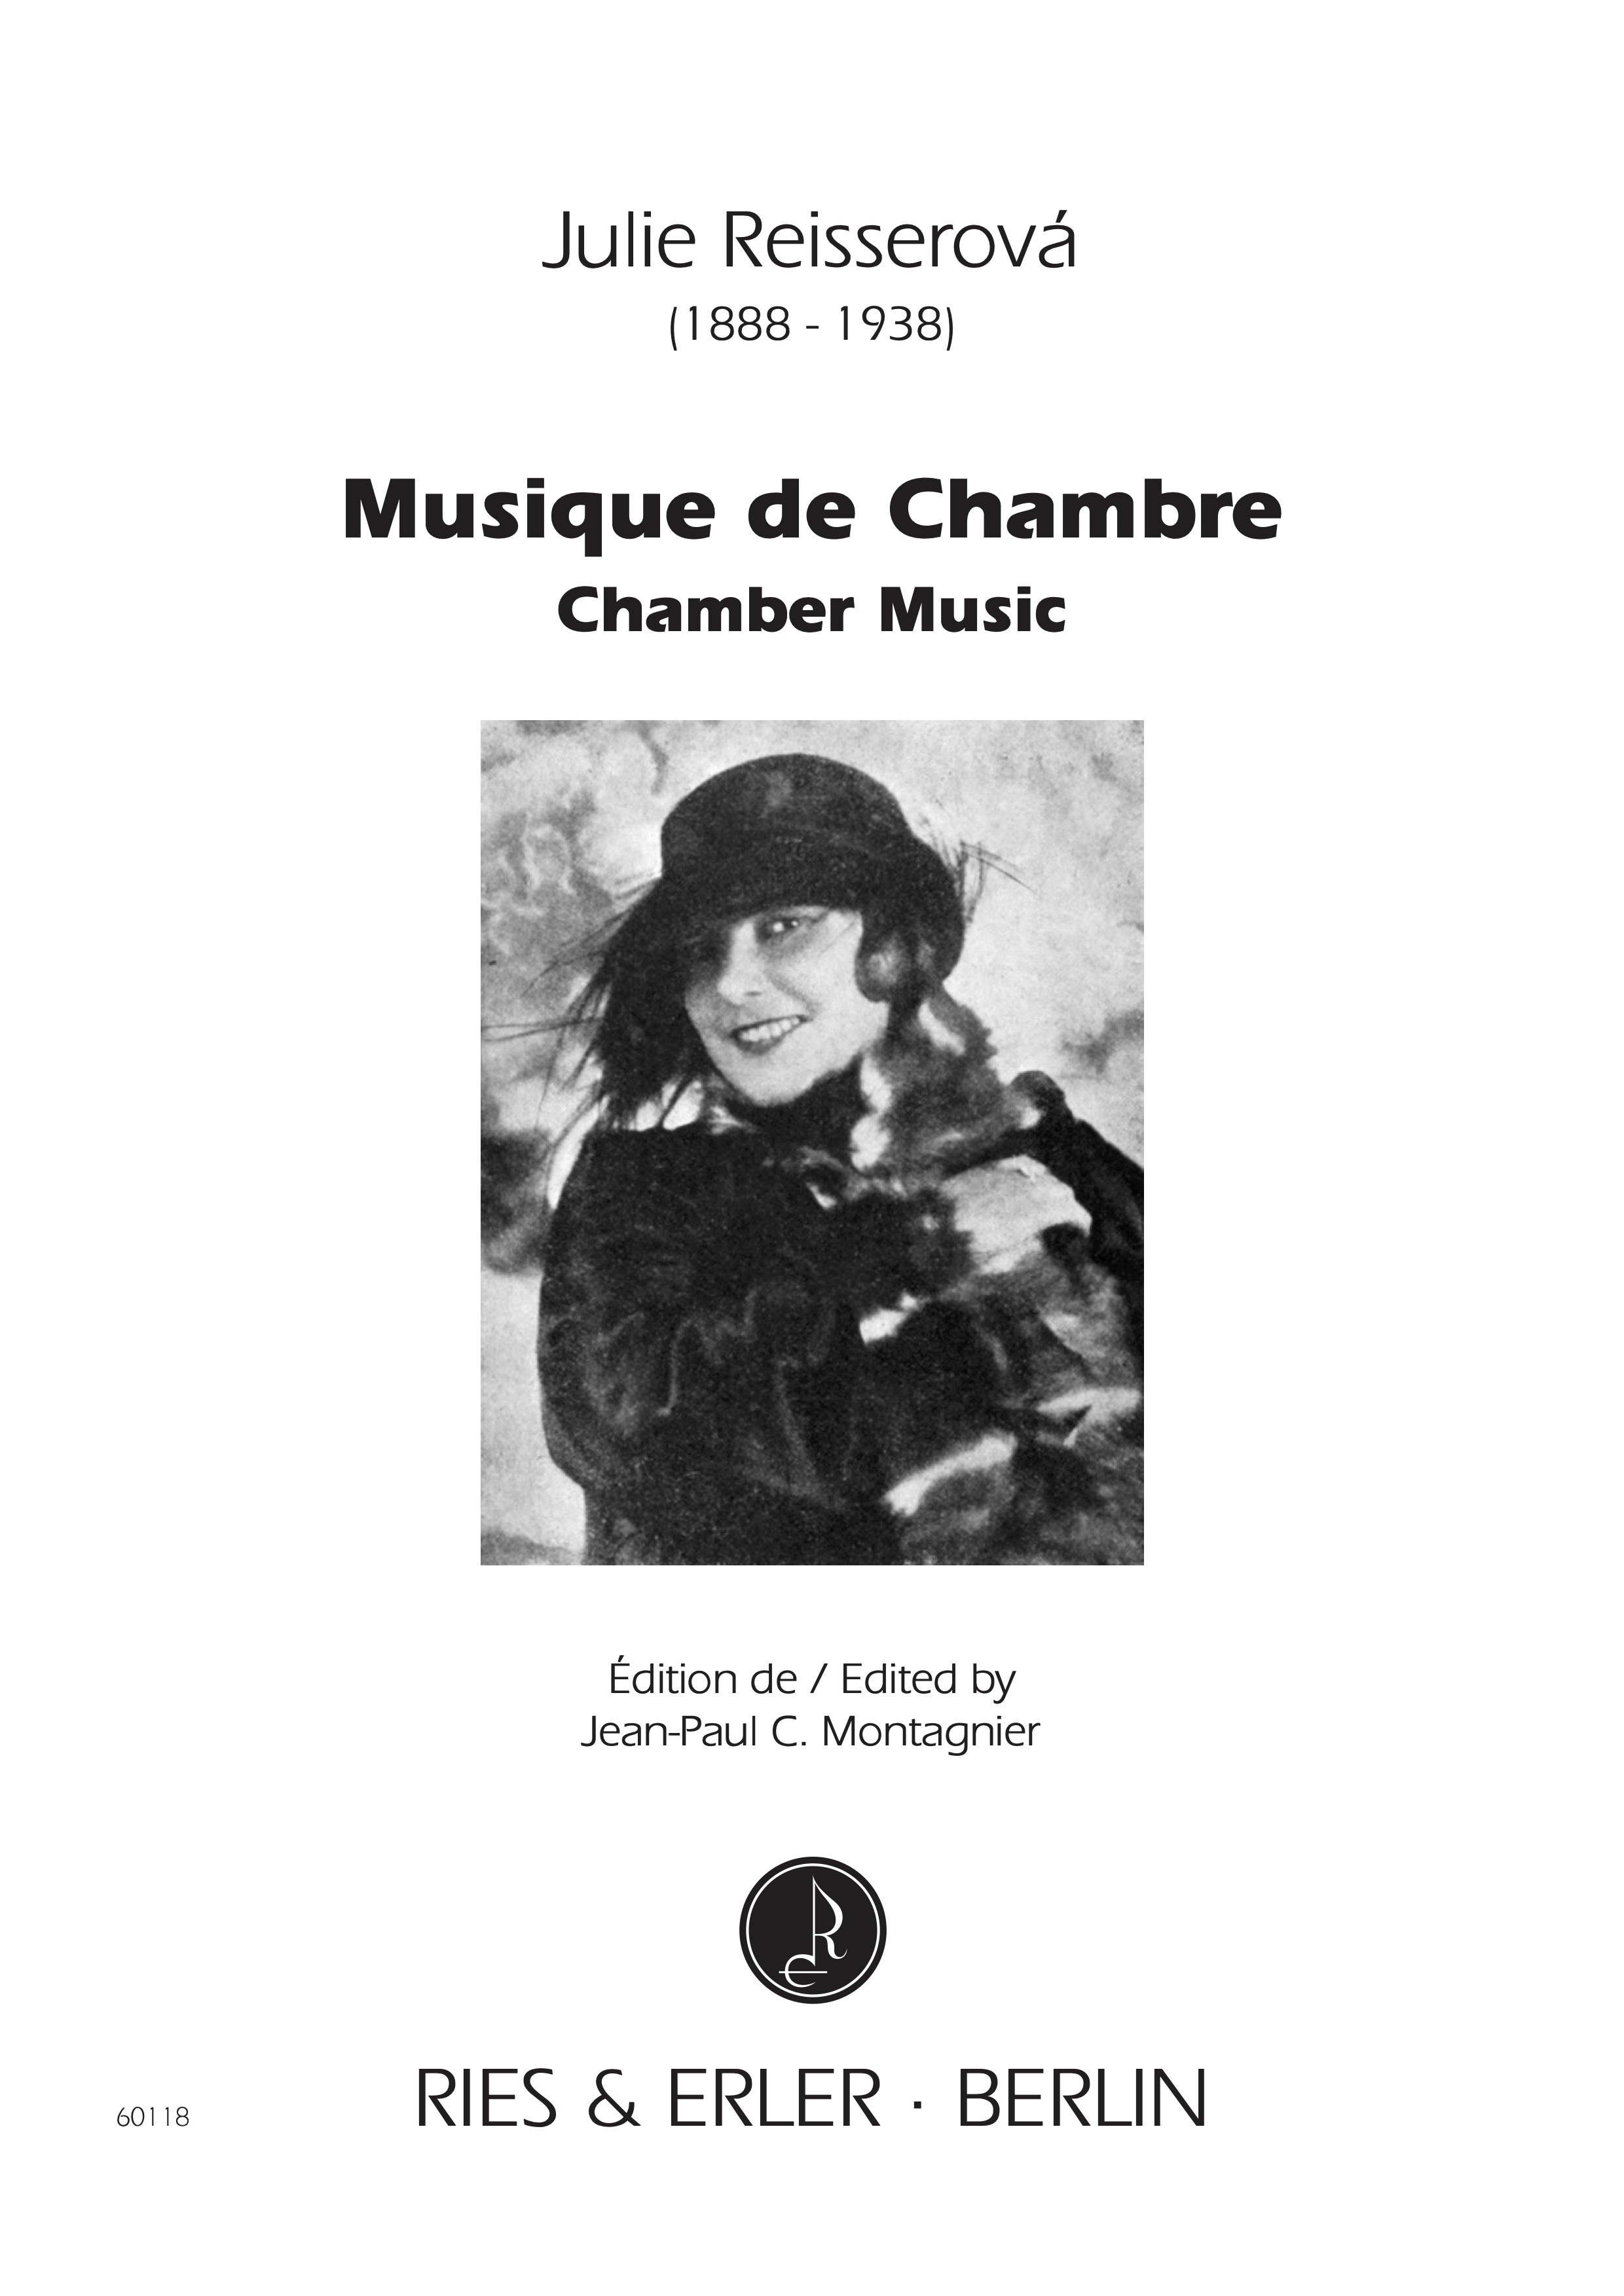 Julie Reisserová, Musique de chambre / Chamber Music}